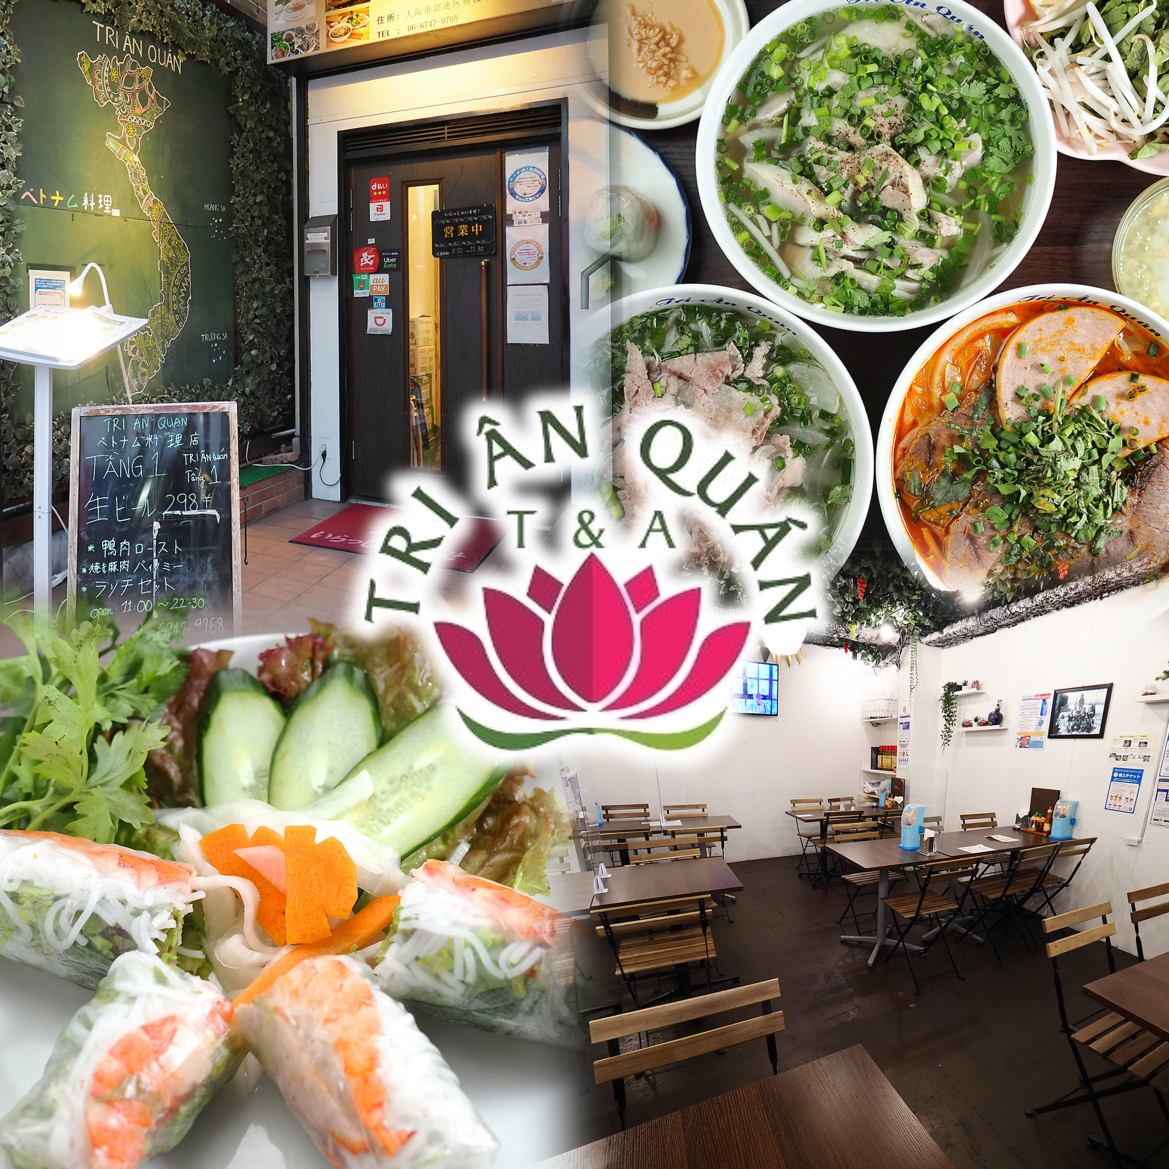 您可以享用各种健康的正宗越南菜。非常适合宴会和女士聚会。